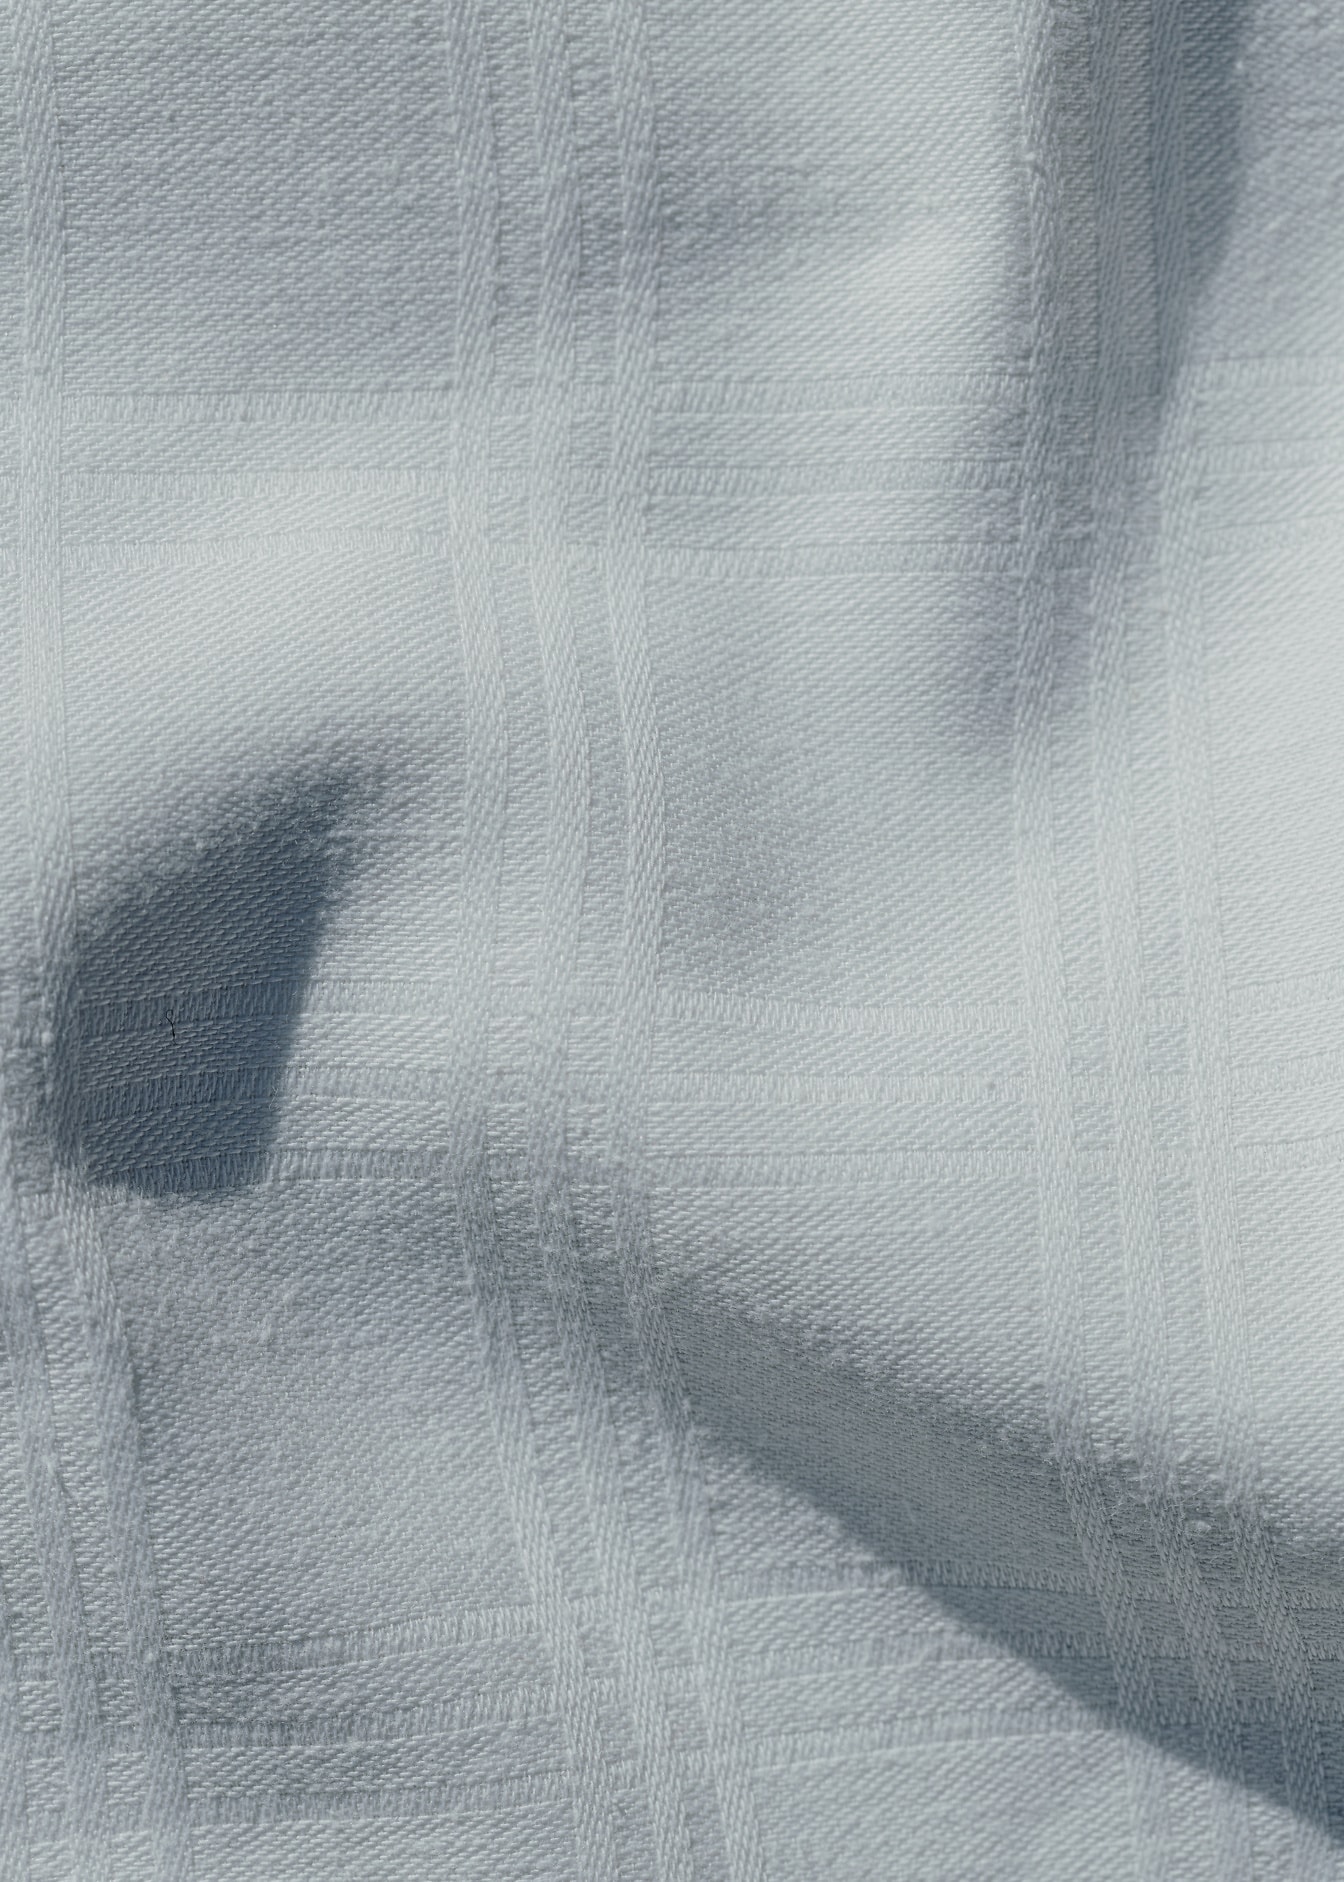 Textura close-up de tecido de algodão branco enrugado com padrão retangular